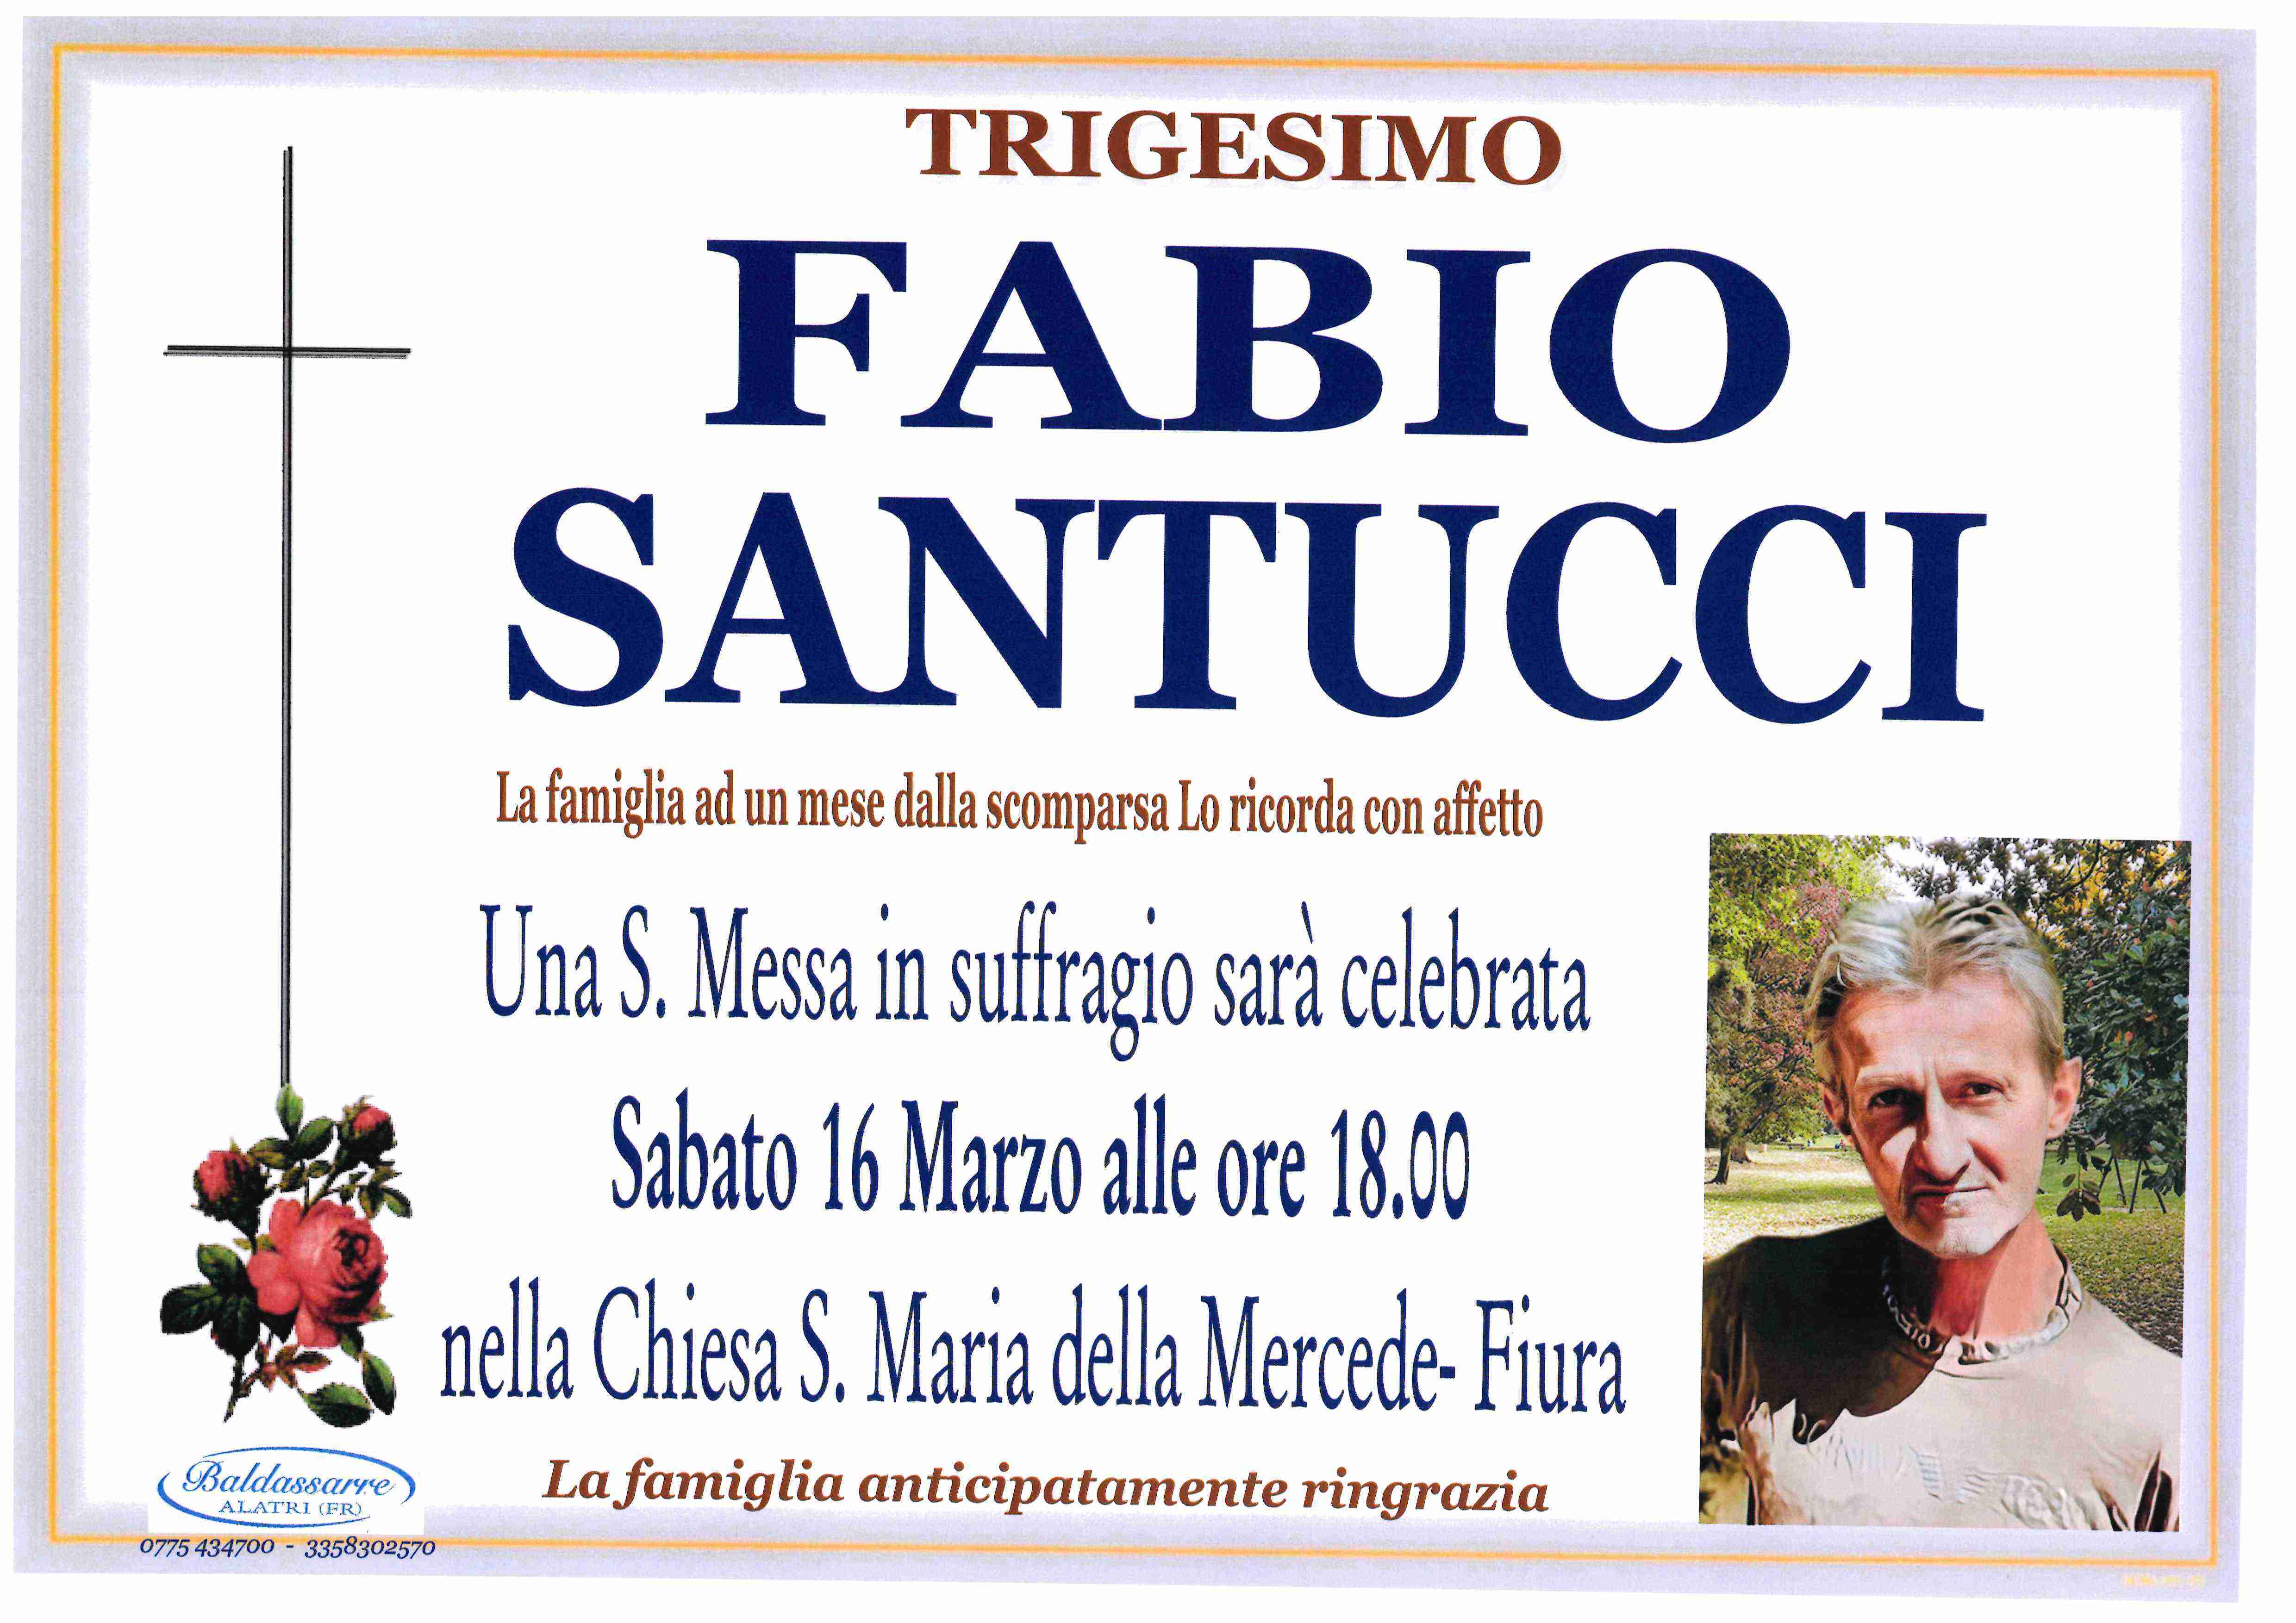 Fabio Santucci